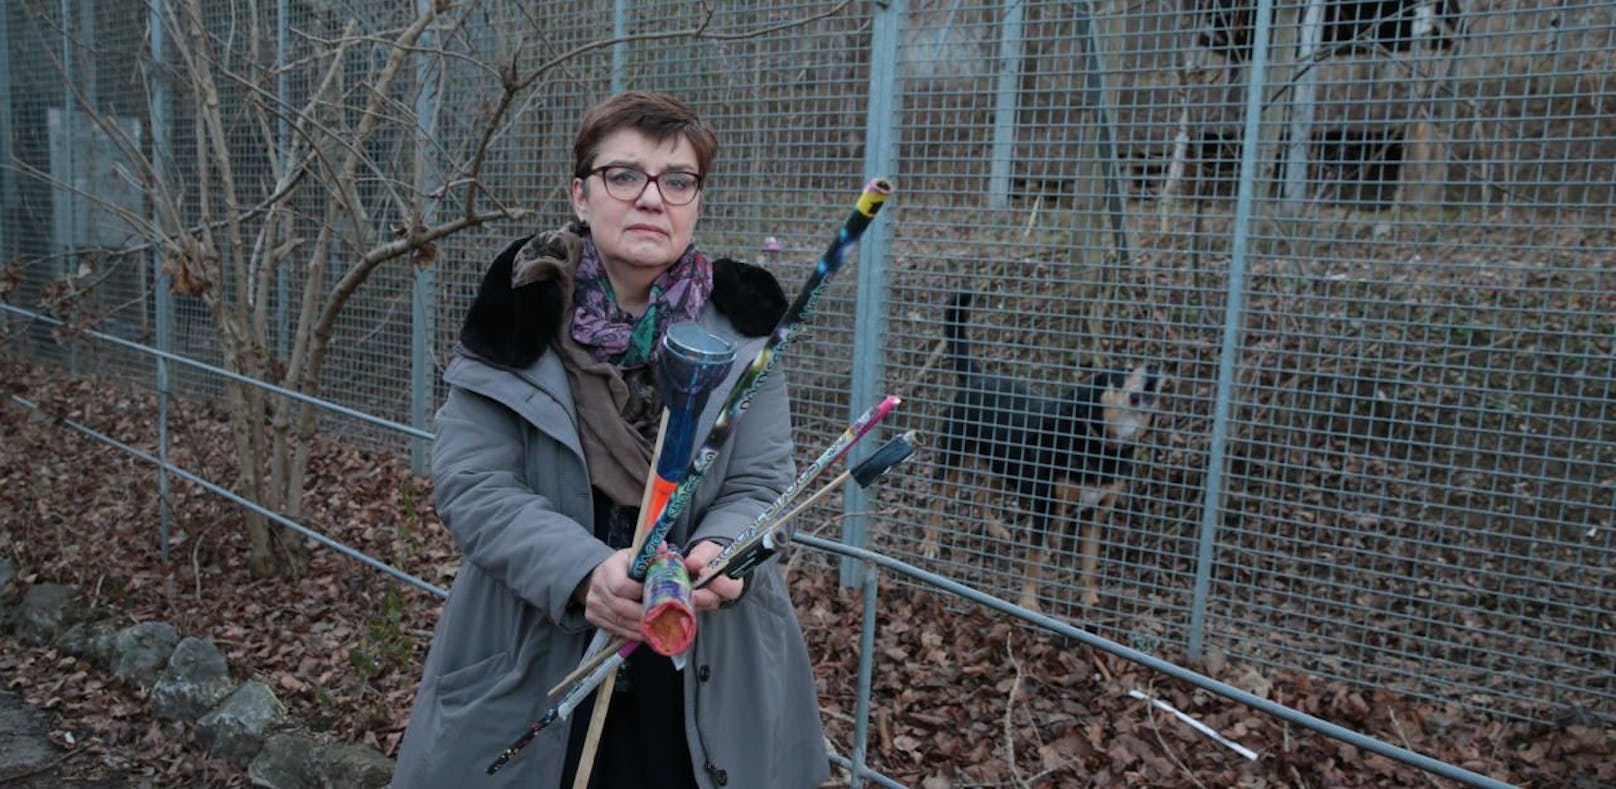 Madeleine Petrovic, Präsidentin des Tierschutzvereins, mit Raketen-Resten  und einem der panischen Hunde im Hintergrund.